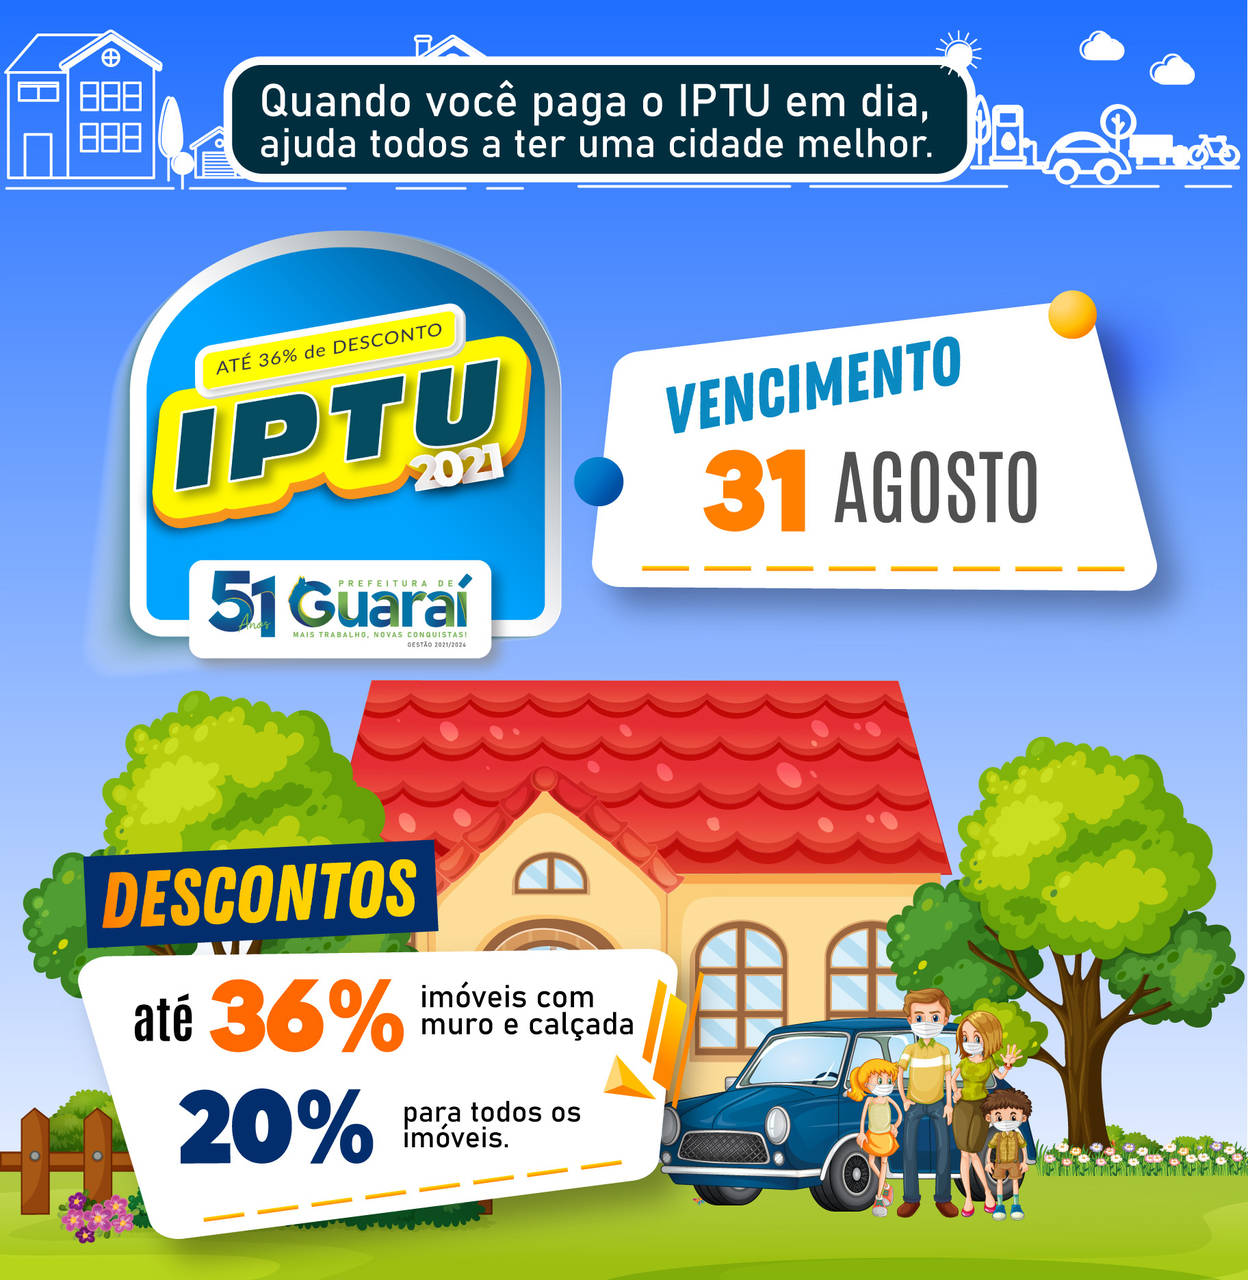 IPTU 2021: prazo para pagamento com descontos de até 36% encerra dia 31 de agosto em Guaraí